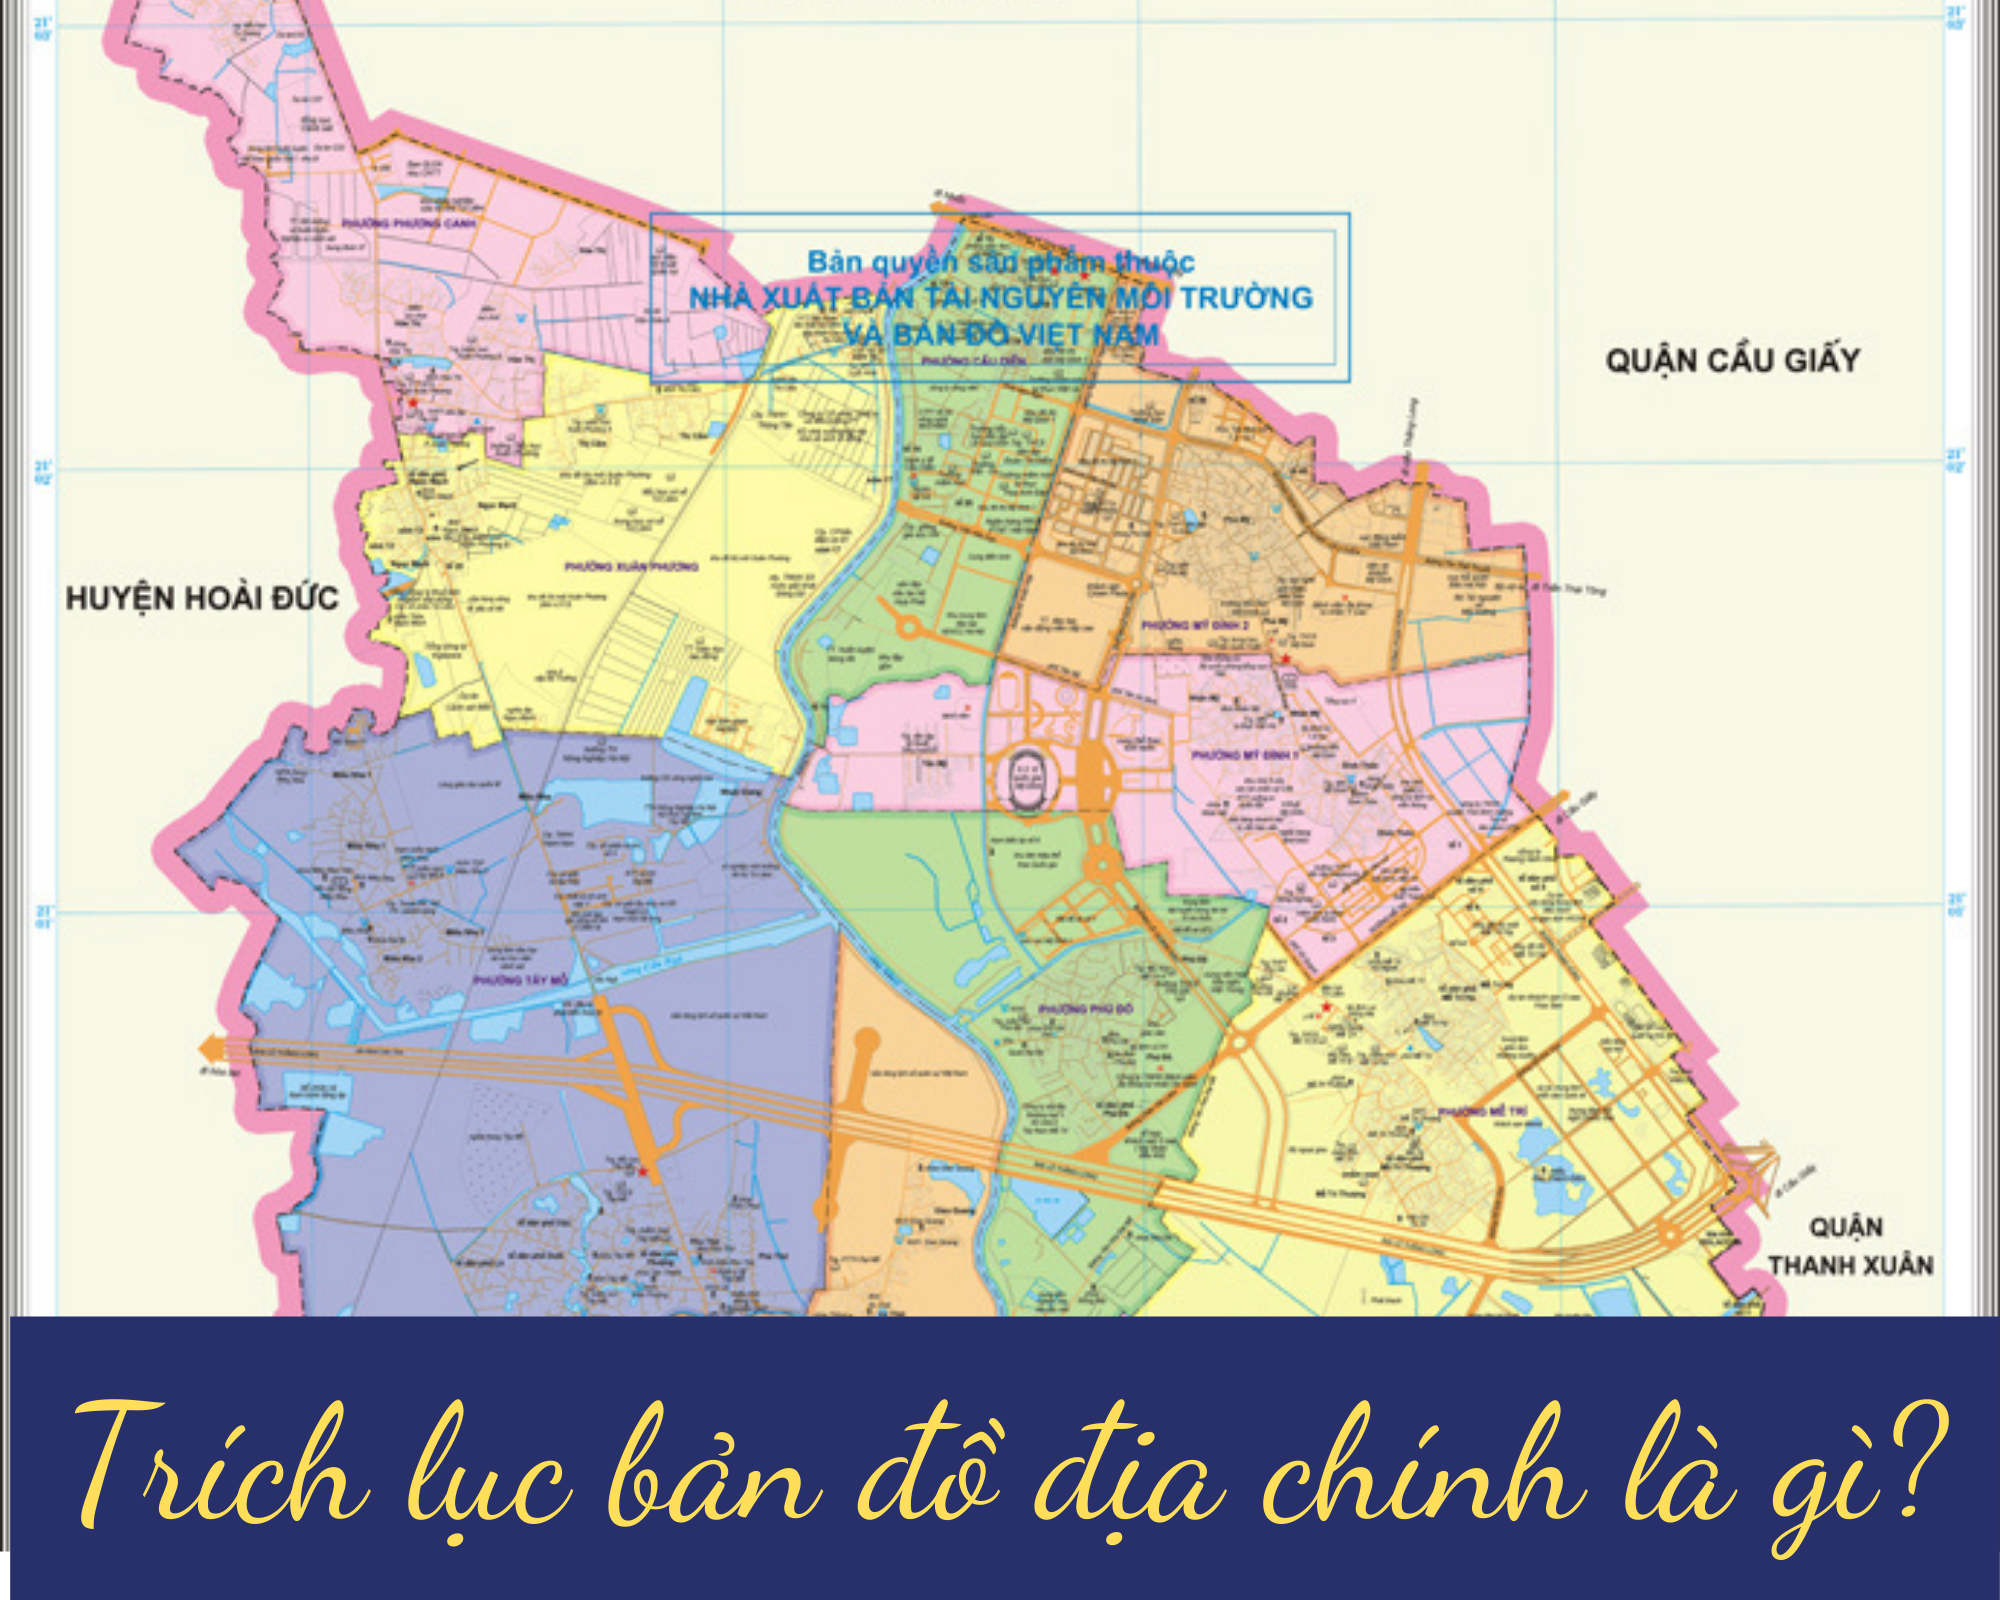 Mẫu trích lục bản đồ địa chính đã được đưa vào sử dụng tại Việt Nam vào năm